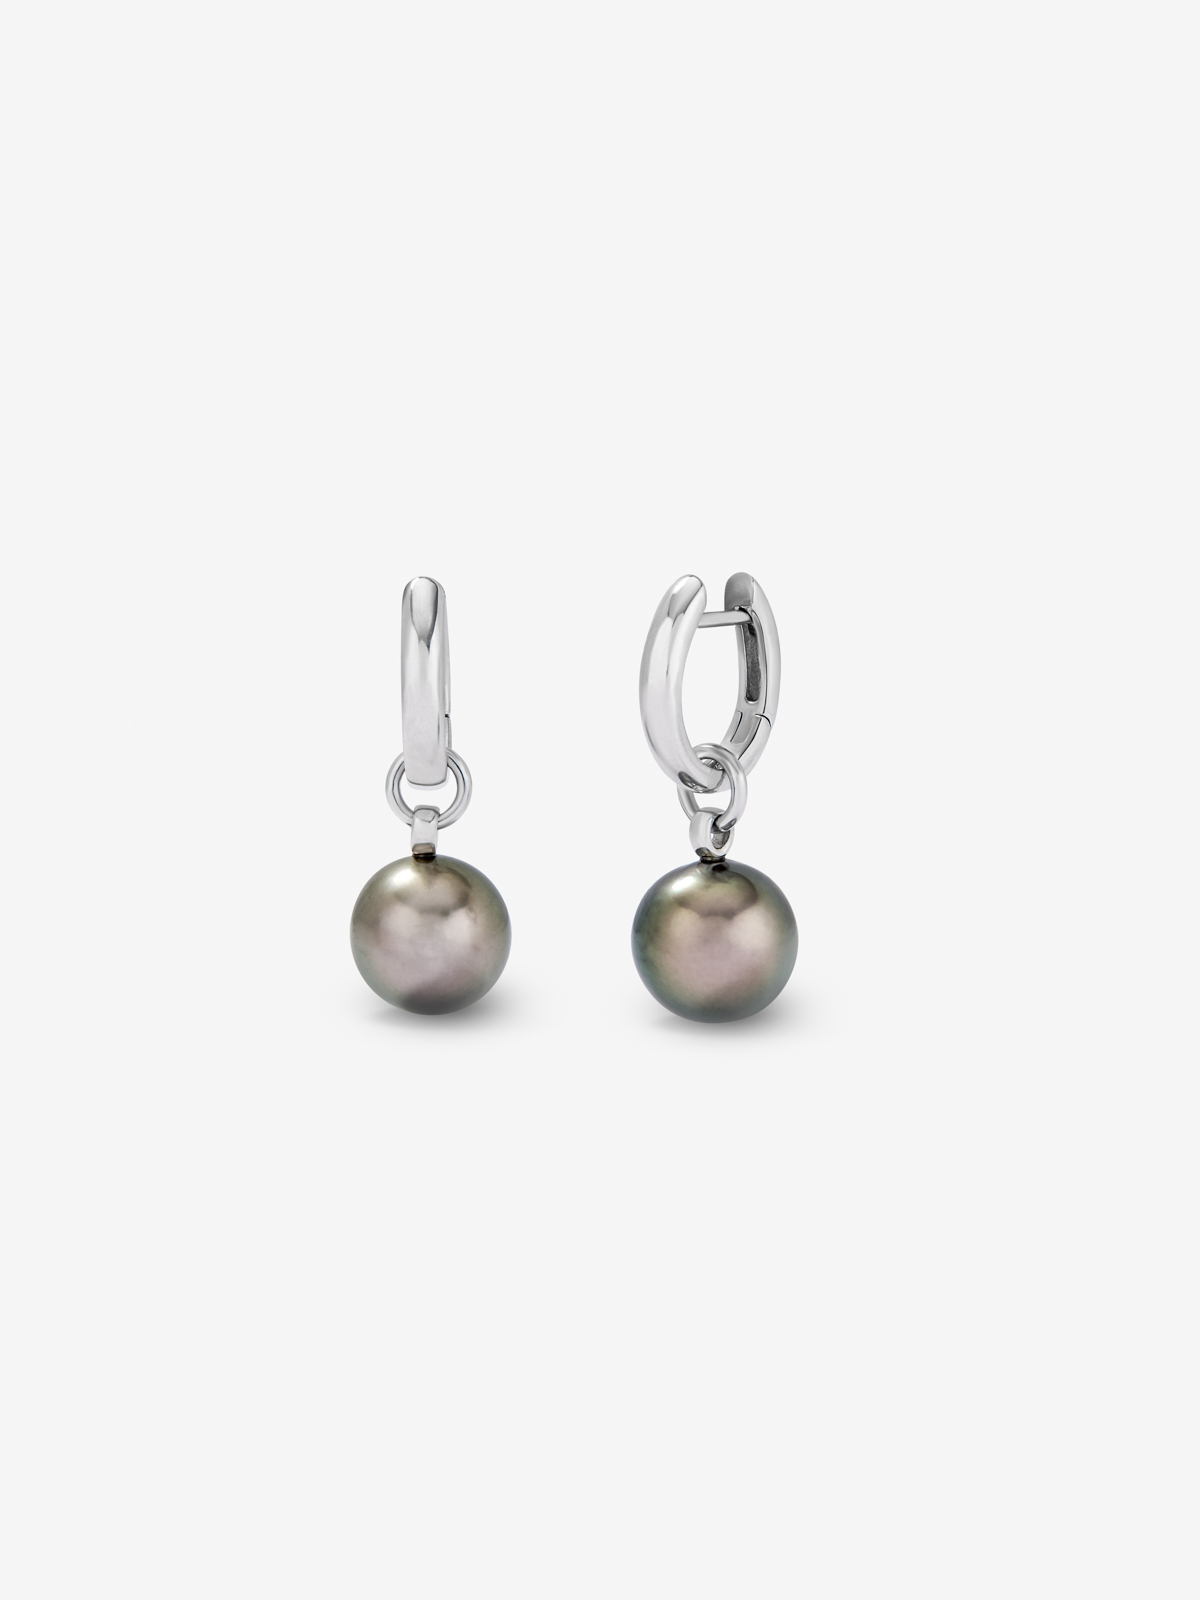 Pendiente de aro de plata 925 con colgante de perla de tahiti de 9,5 mm